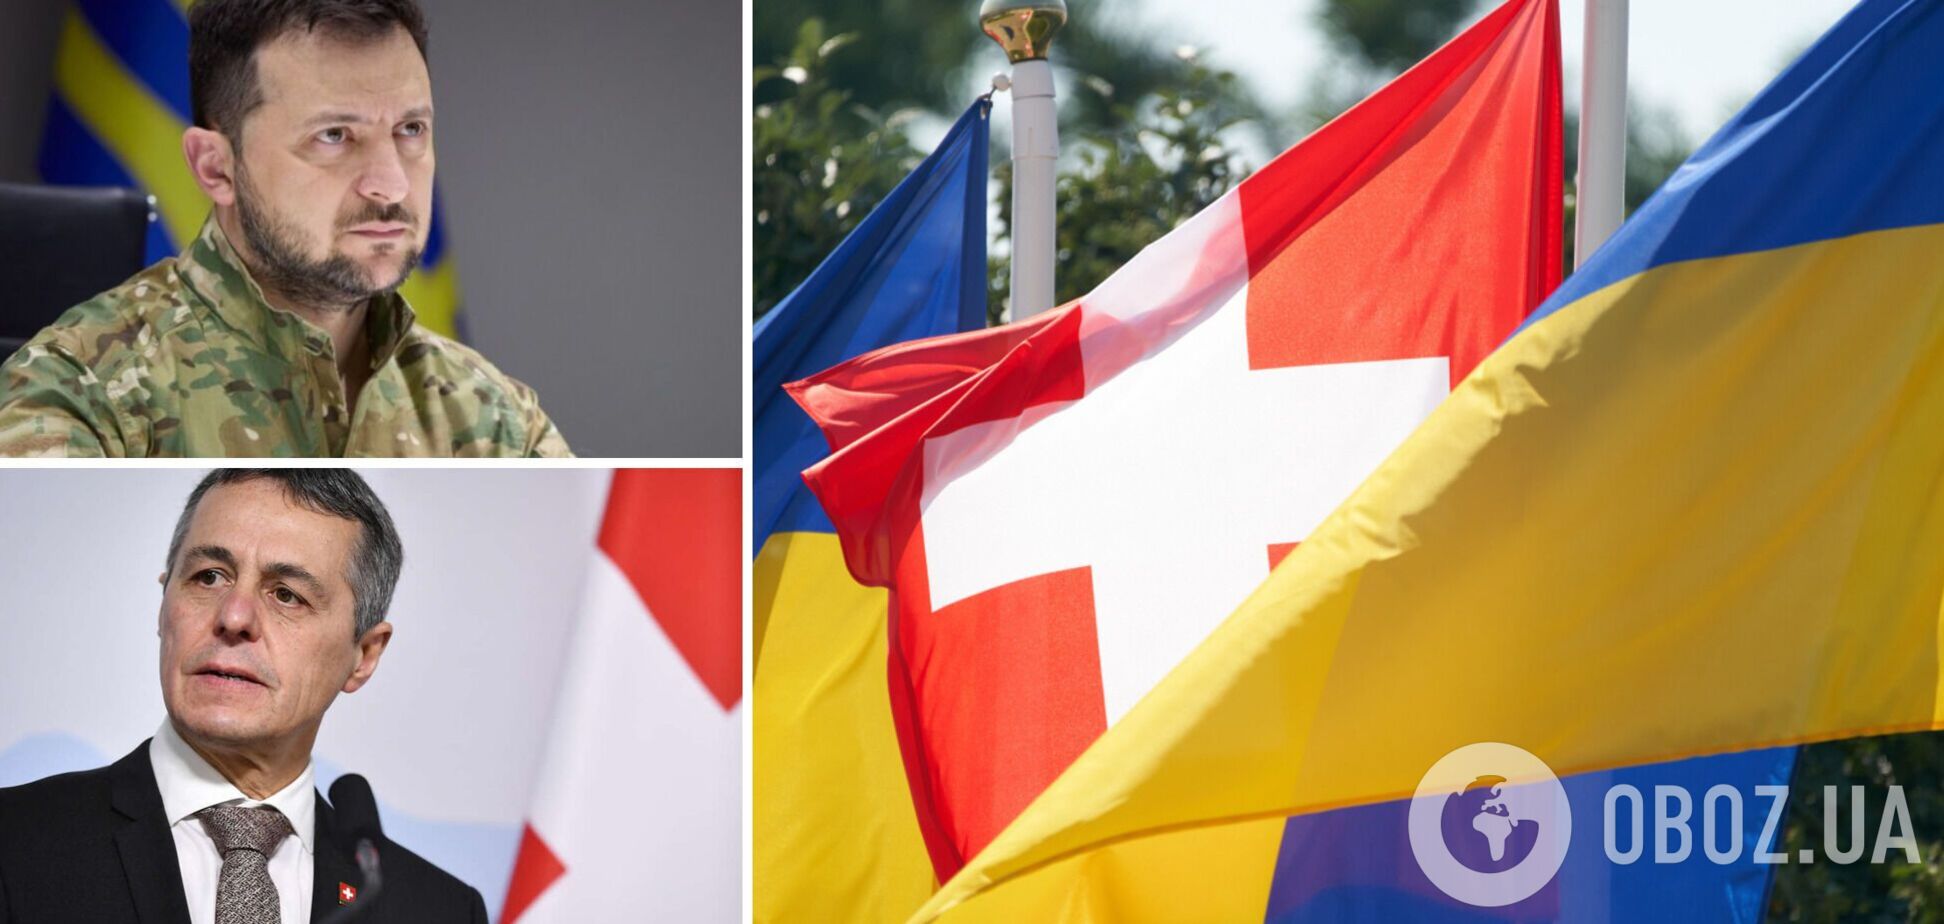 Зеленский и президент Швейцарии Кассис подписали соглашение в сфере диджитализации. Фото и видео